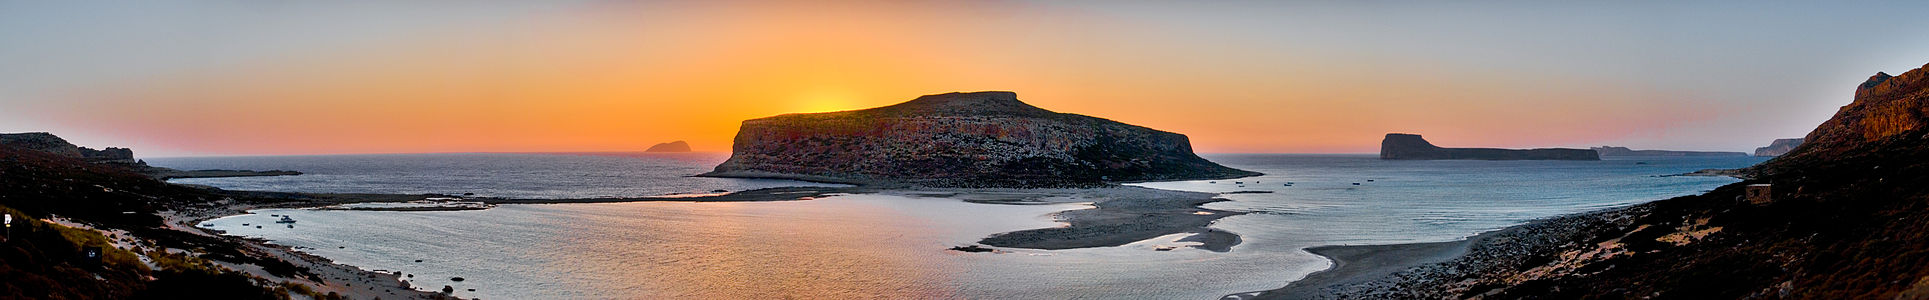 Girit adasının kuzeybatısındaki Balos plajından Gramvousa adasının gün batımı manzarası (Gramvousa, Kissamos, Hanya, Yunanistan). (Üreten:[1])